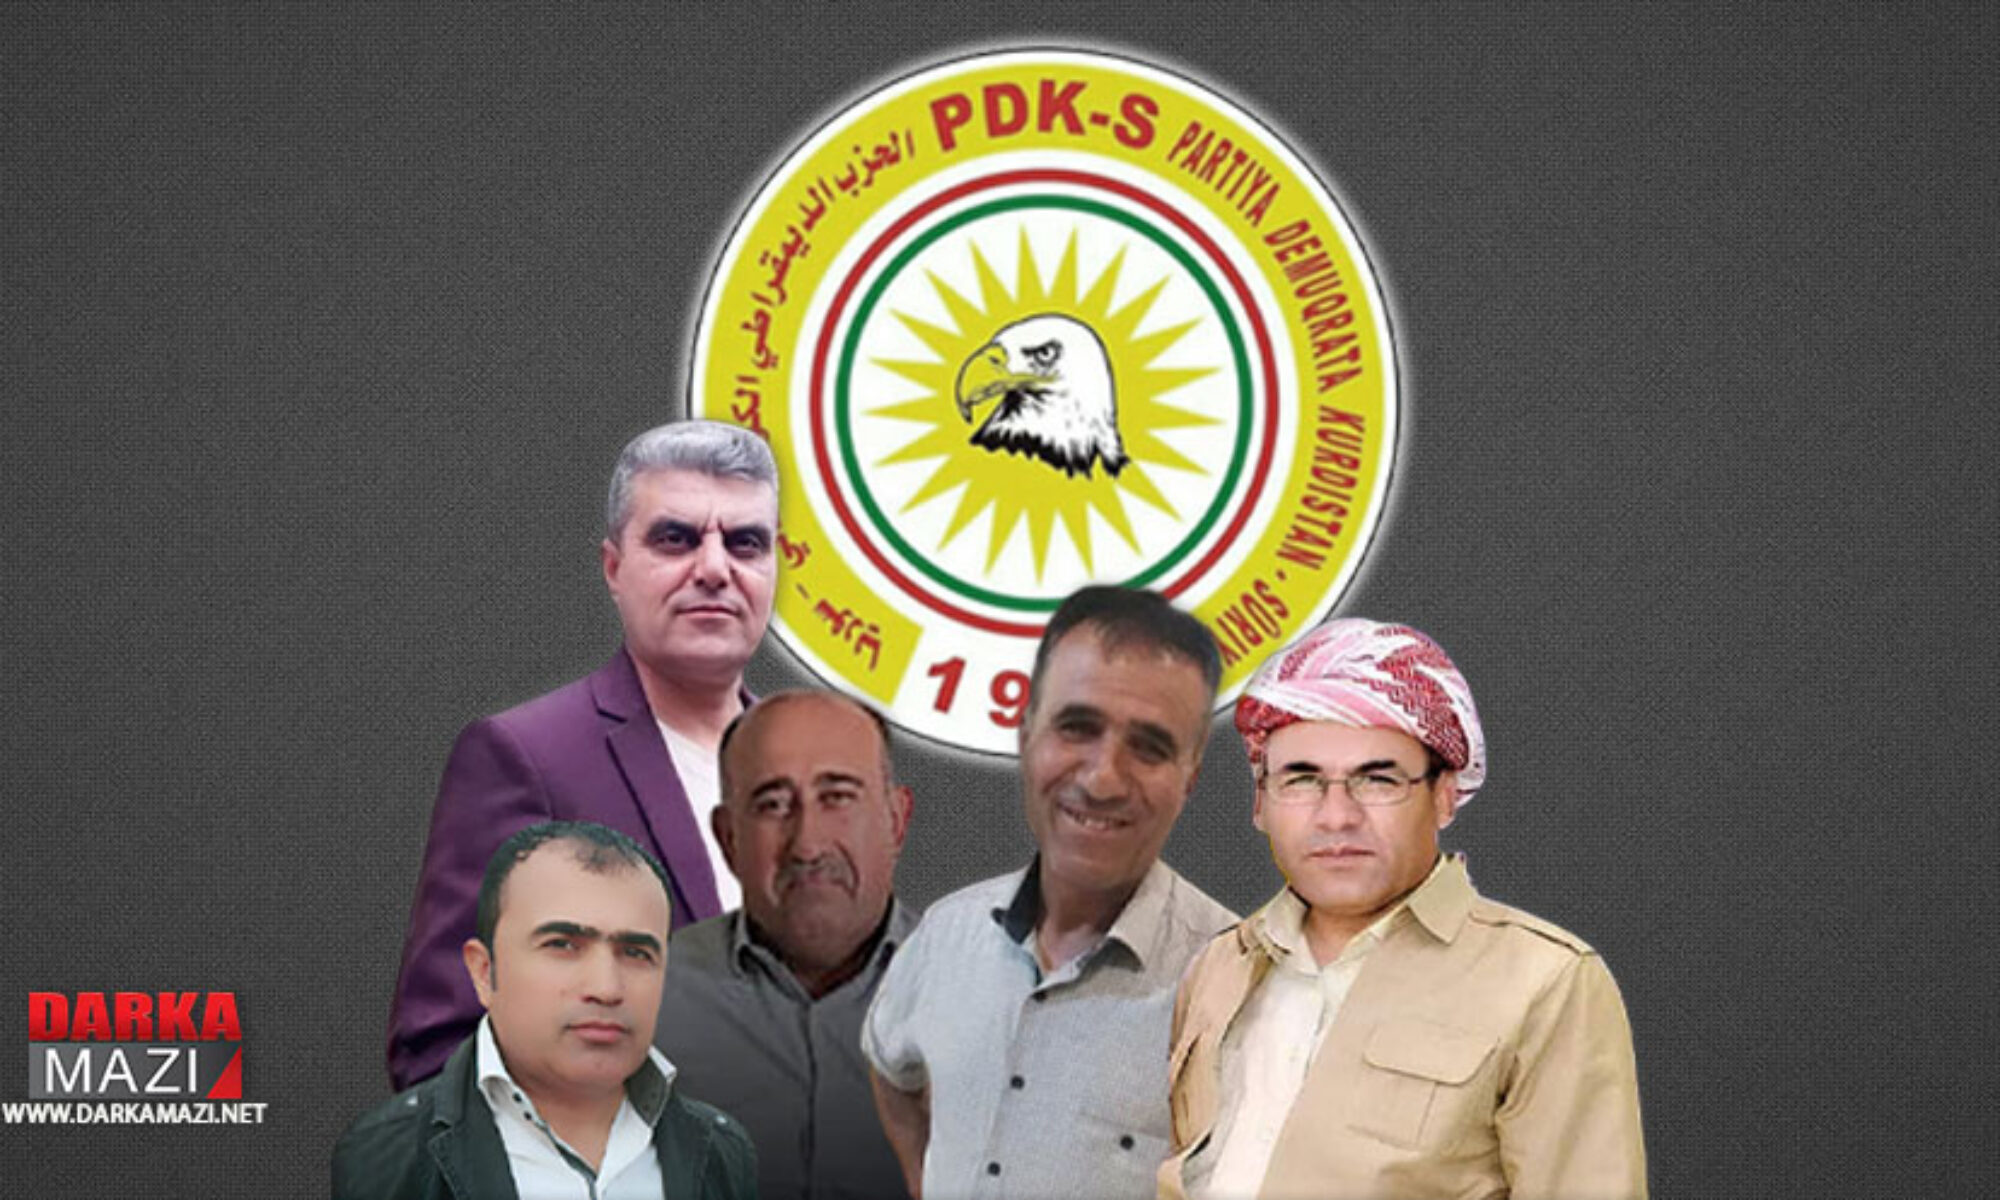 PDK-S bir liste yayınlayarak PYD asayişi tarafından kaçırılan üyelerinin akibetini sordu